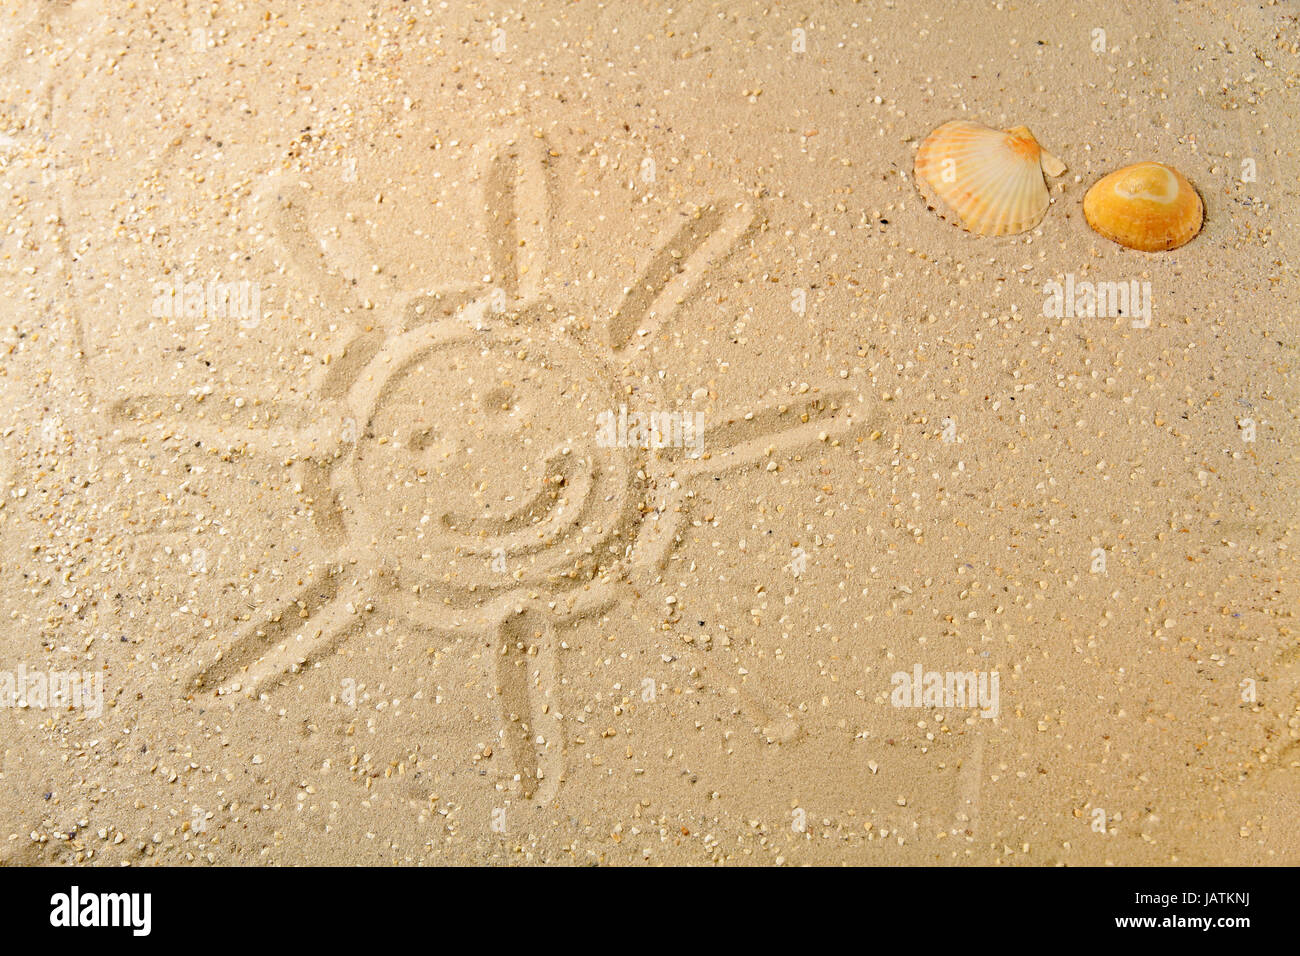 Sonne im Sand gezeichnet mit zwei farbigen Muscheln am Strand Stock Photo